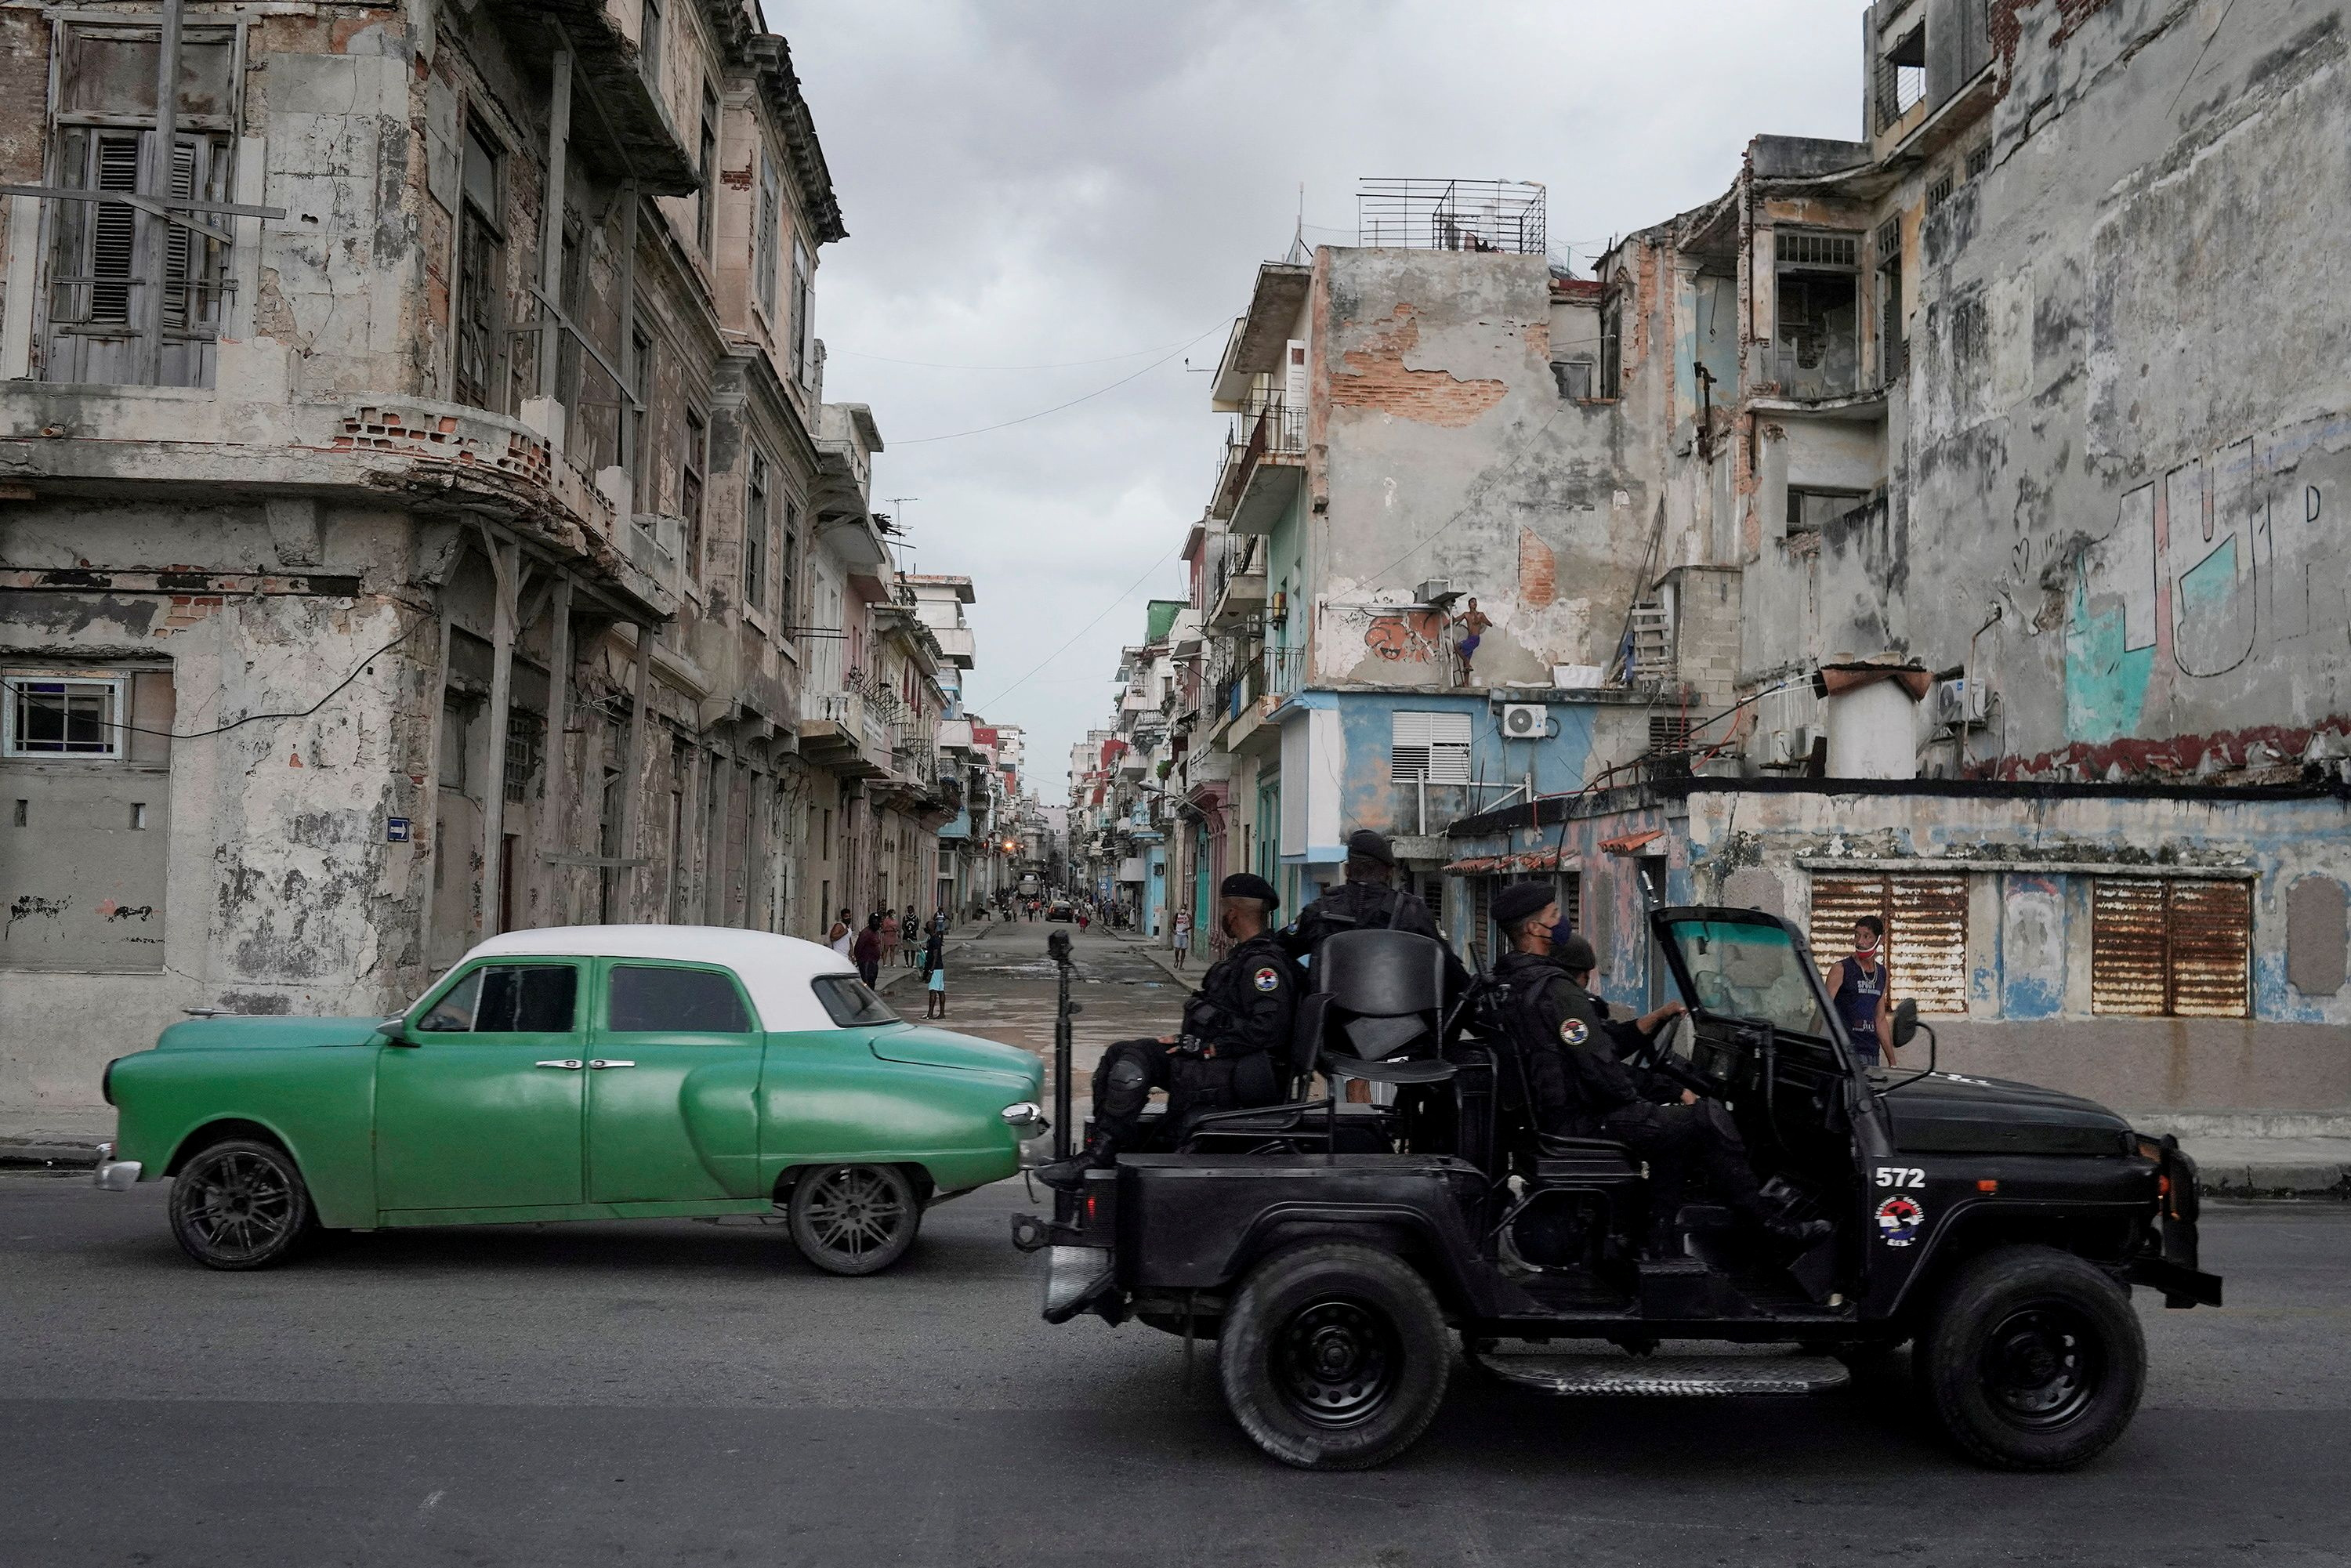 FOTO DEL FILE: Un veicolo delle forze speciali passa davanti a una vecchia auto nel centro dell'Avana, Cuba, il 13 luglio 2021. REUTERS/Alexandre Menegini/Foto del file